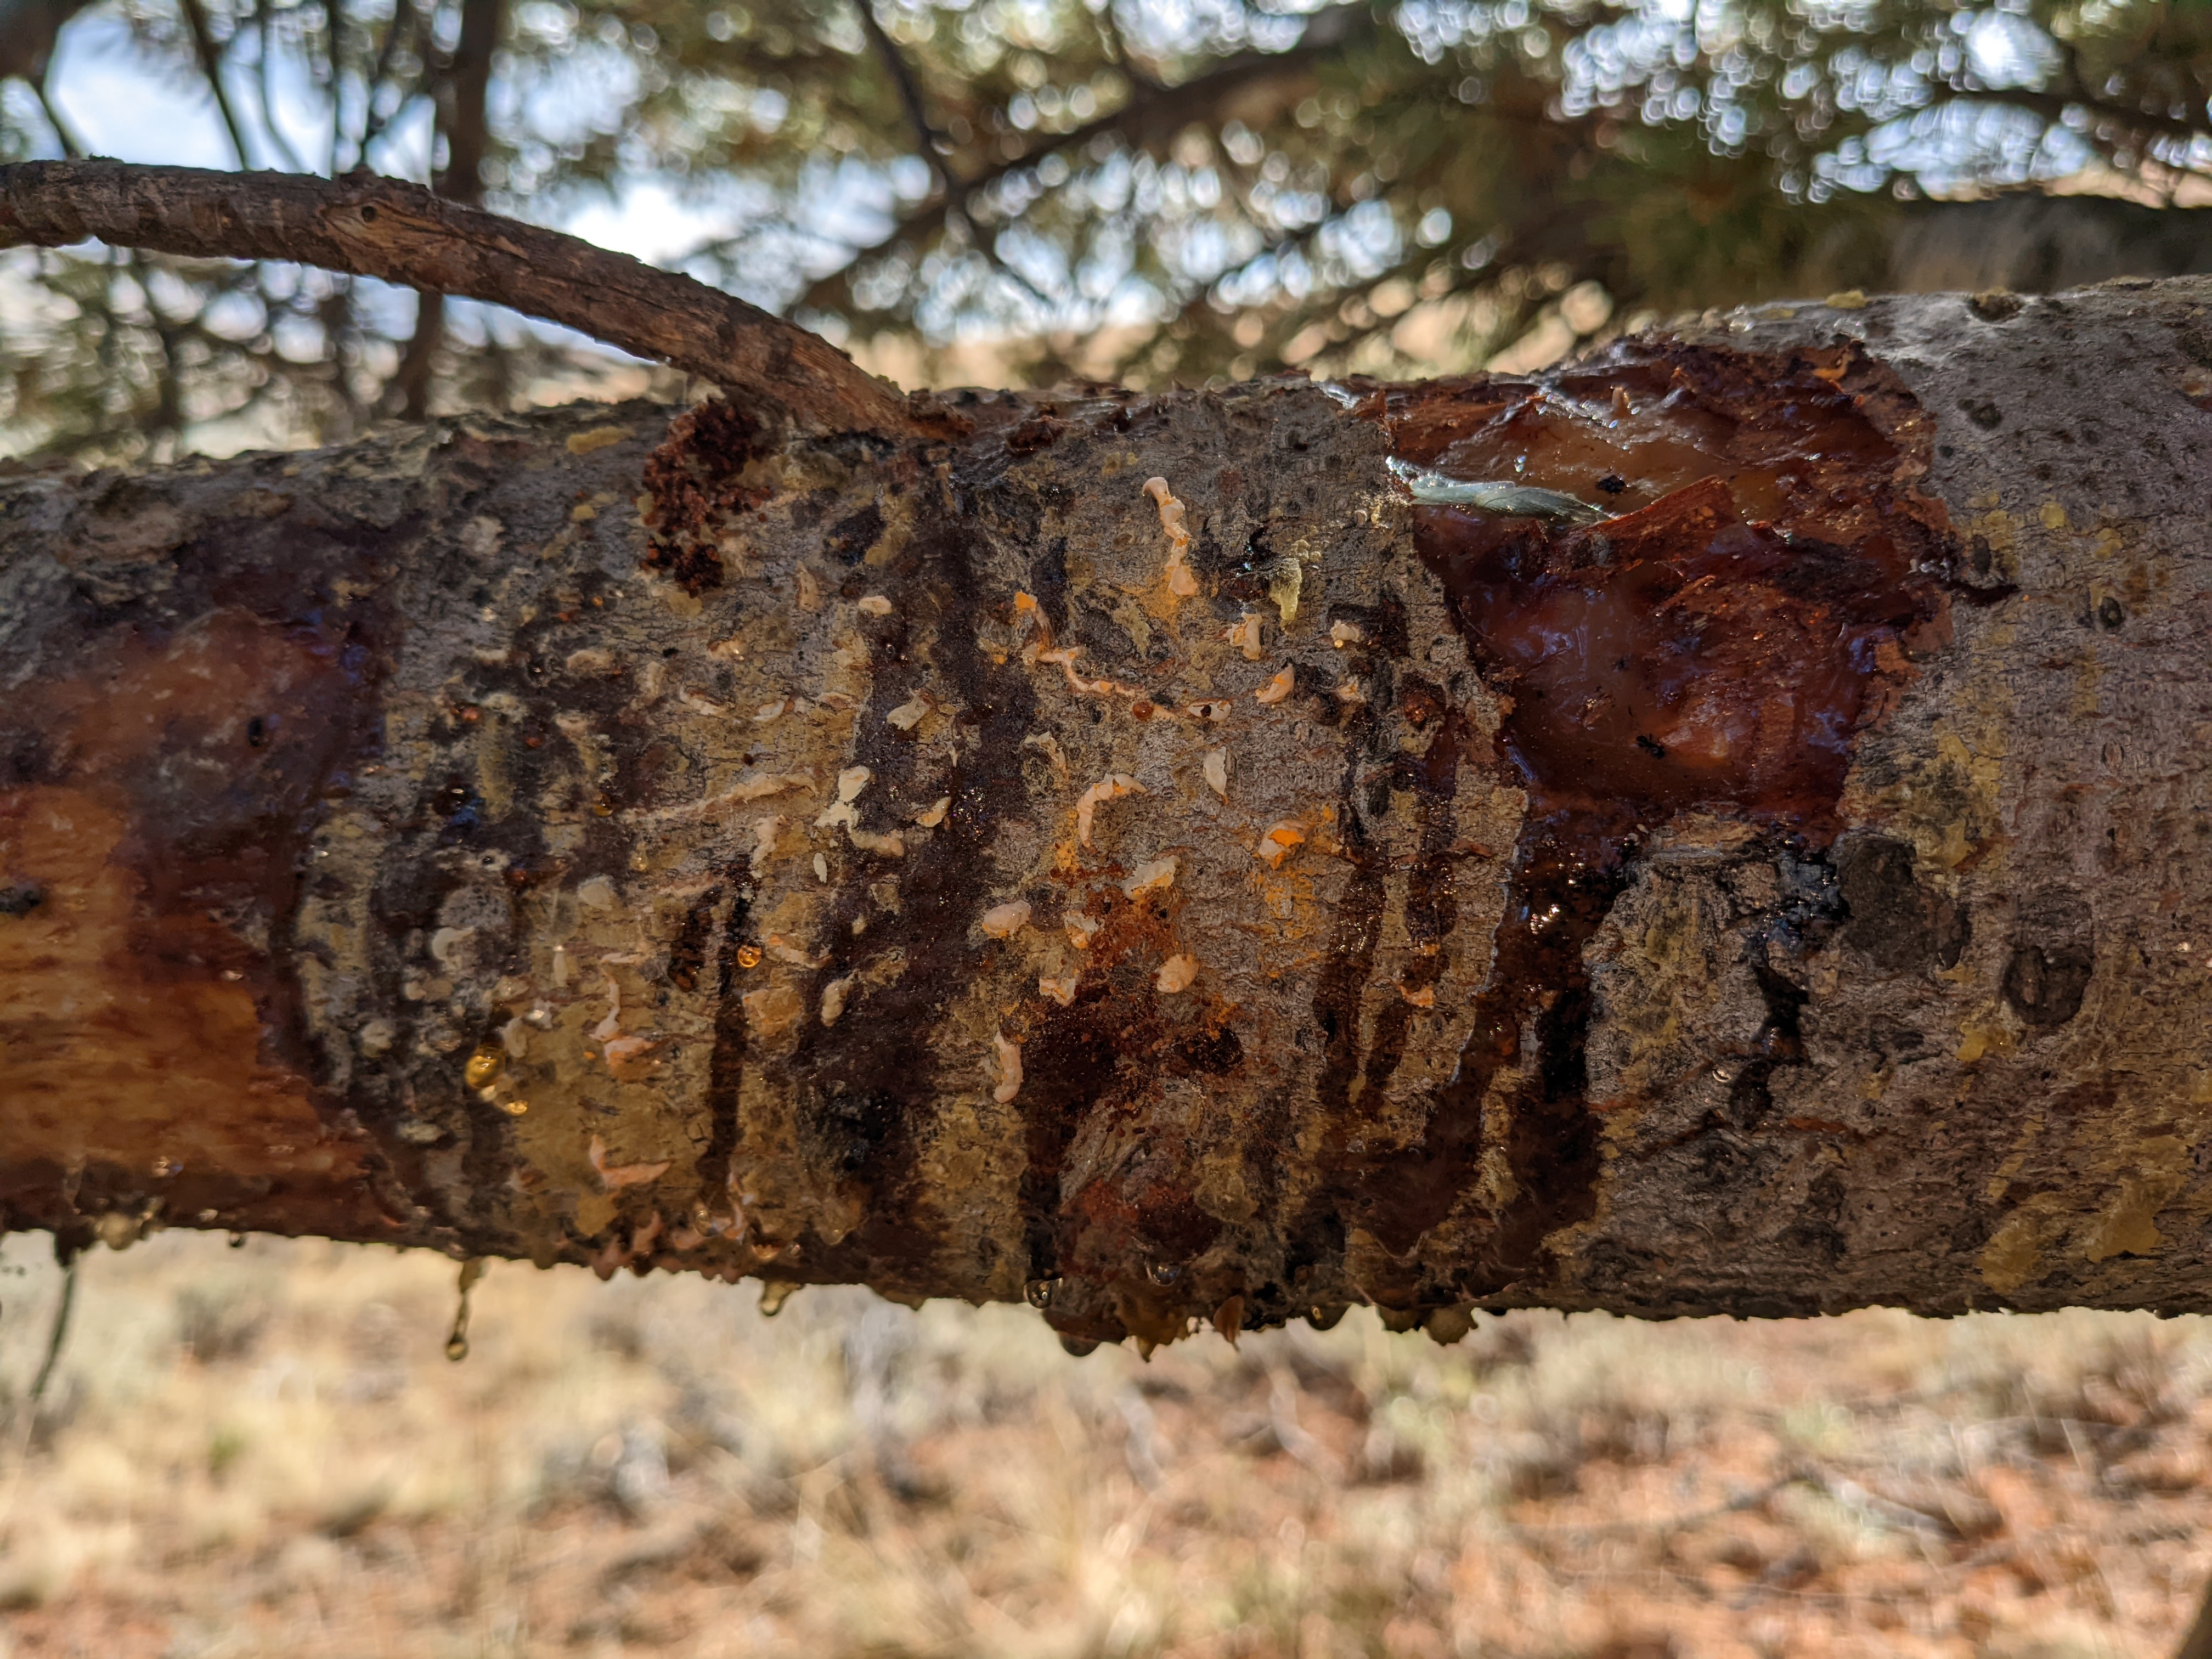 Blister rust on whitebark pine tree